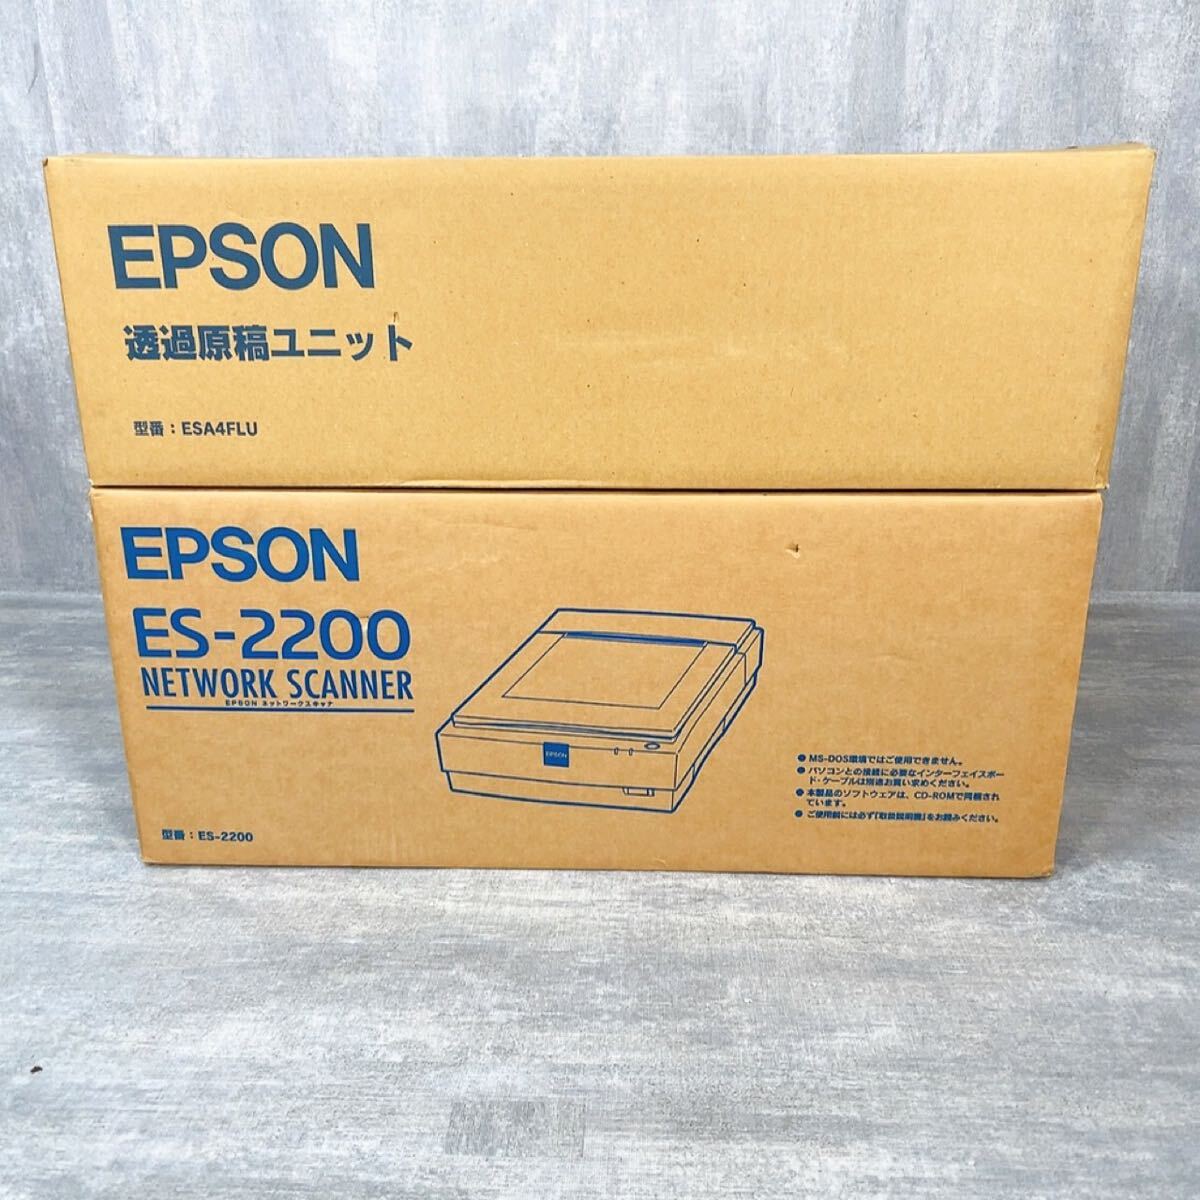 Z064 EPSON ES-2200 цвет образ сканер ESA4FLU